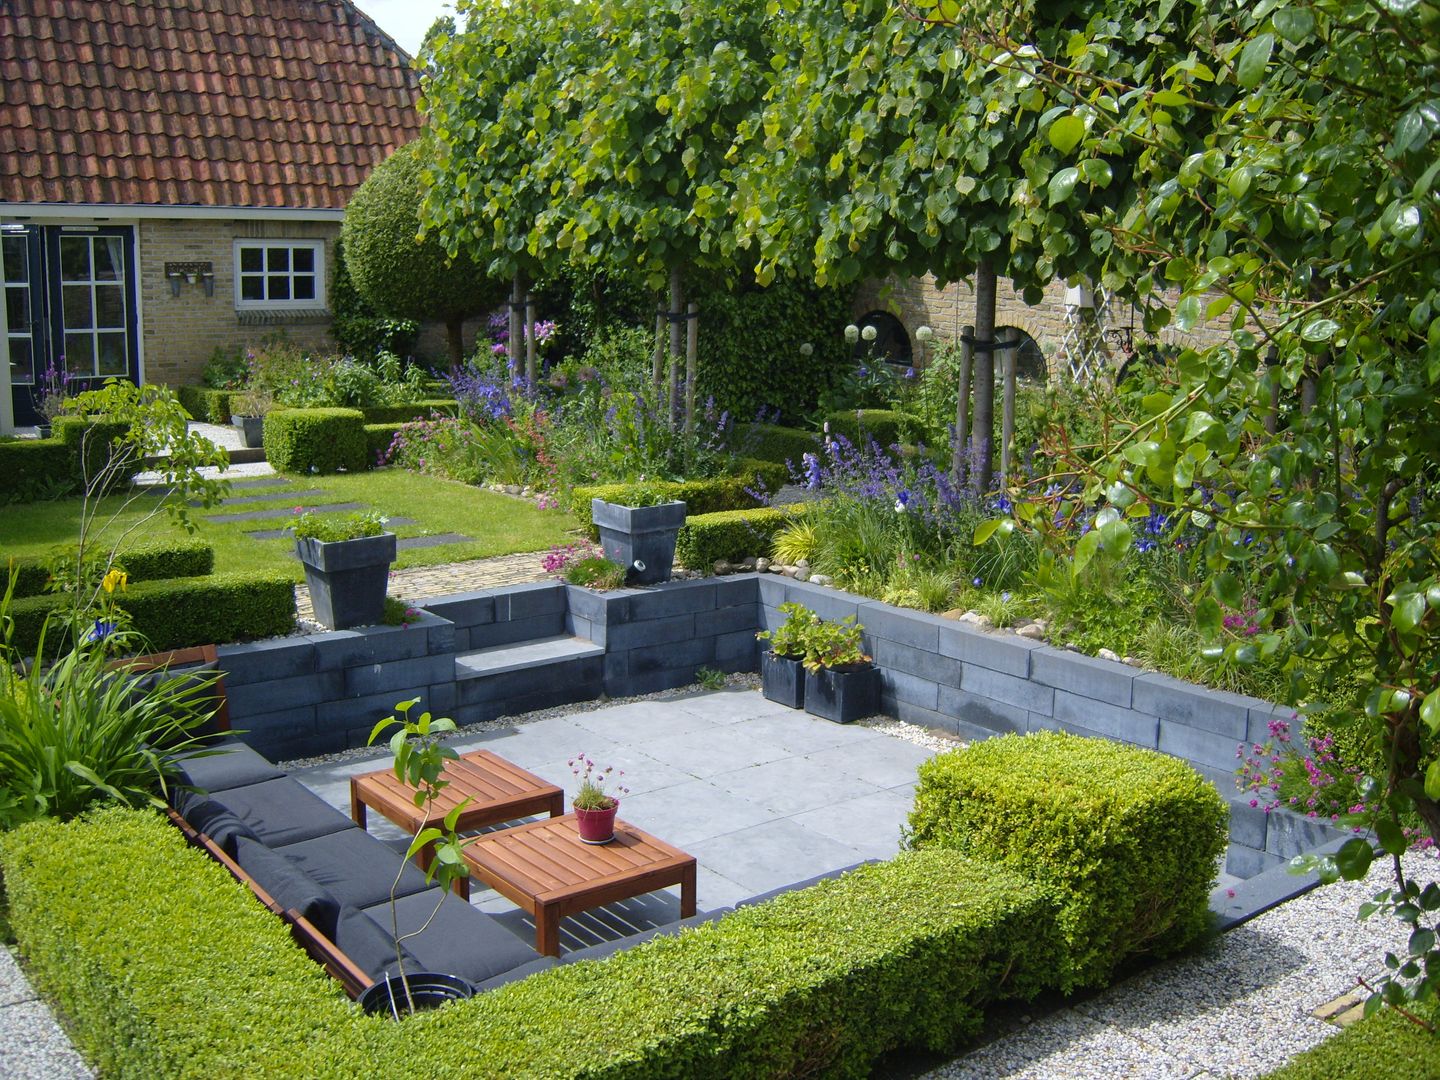 Moderne zitkuil in eigen tuin van tuinontwerper Joke Gerritsma, Joke Gerritsma Tuinontwerpen Joke Gerritsma Tuinontwerpen Jardins modernos Azulejo